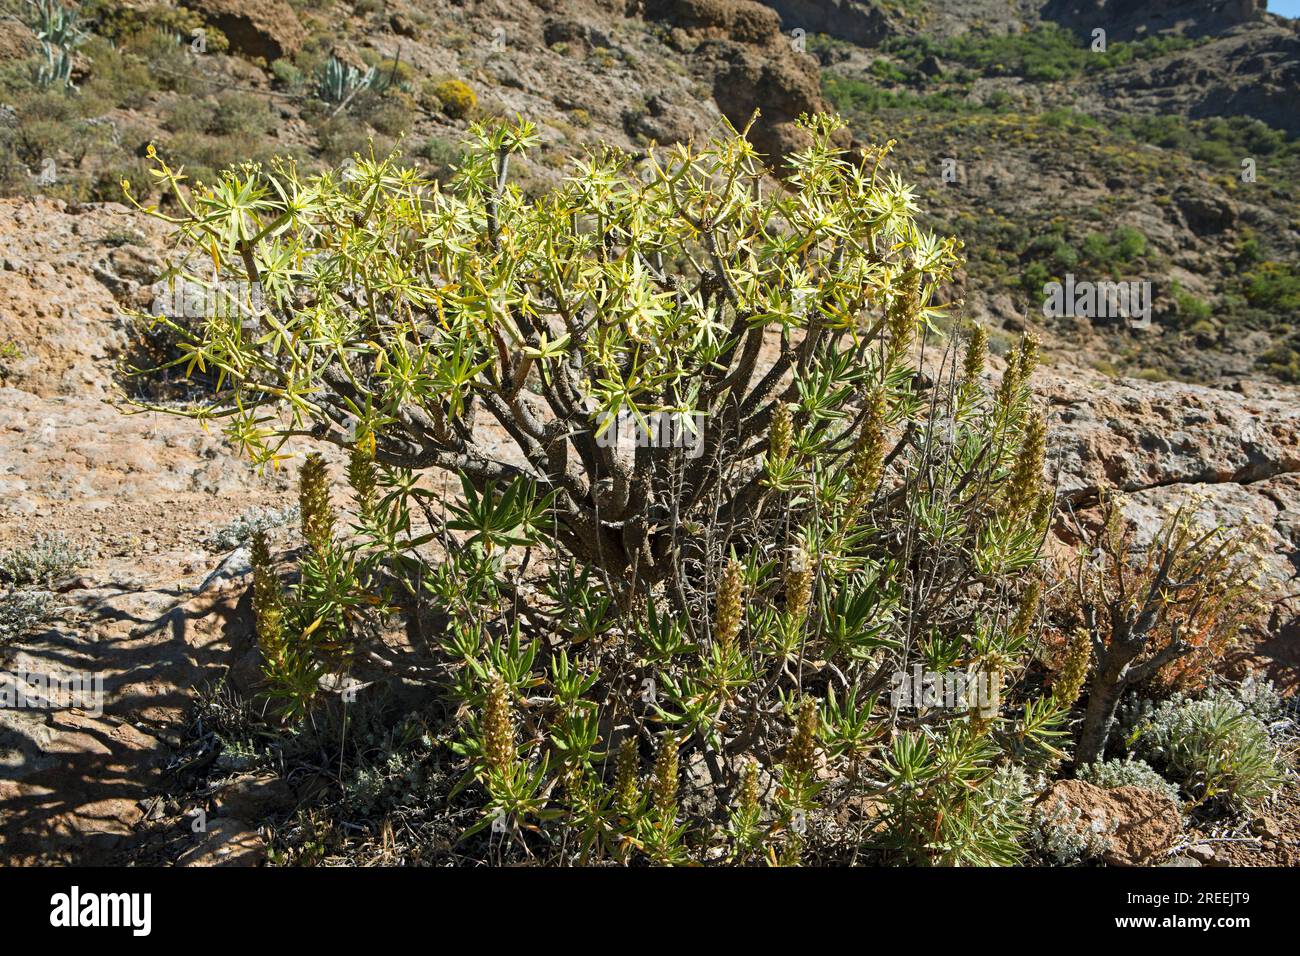 Balsam spurge (Euphorbia balsamifera) in the Caldera de Tejeda, Las Palmas Province, Gran Canaria, Canary Islands, Spain Stock Photo